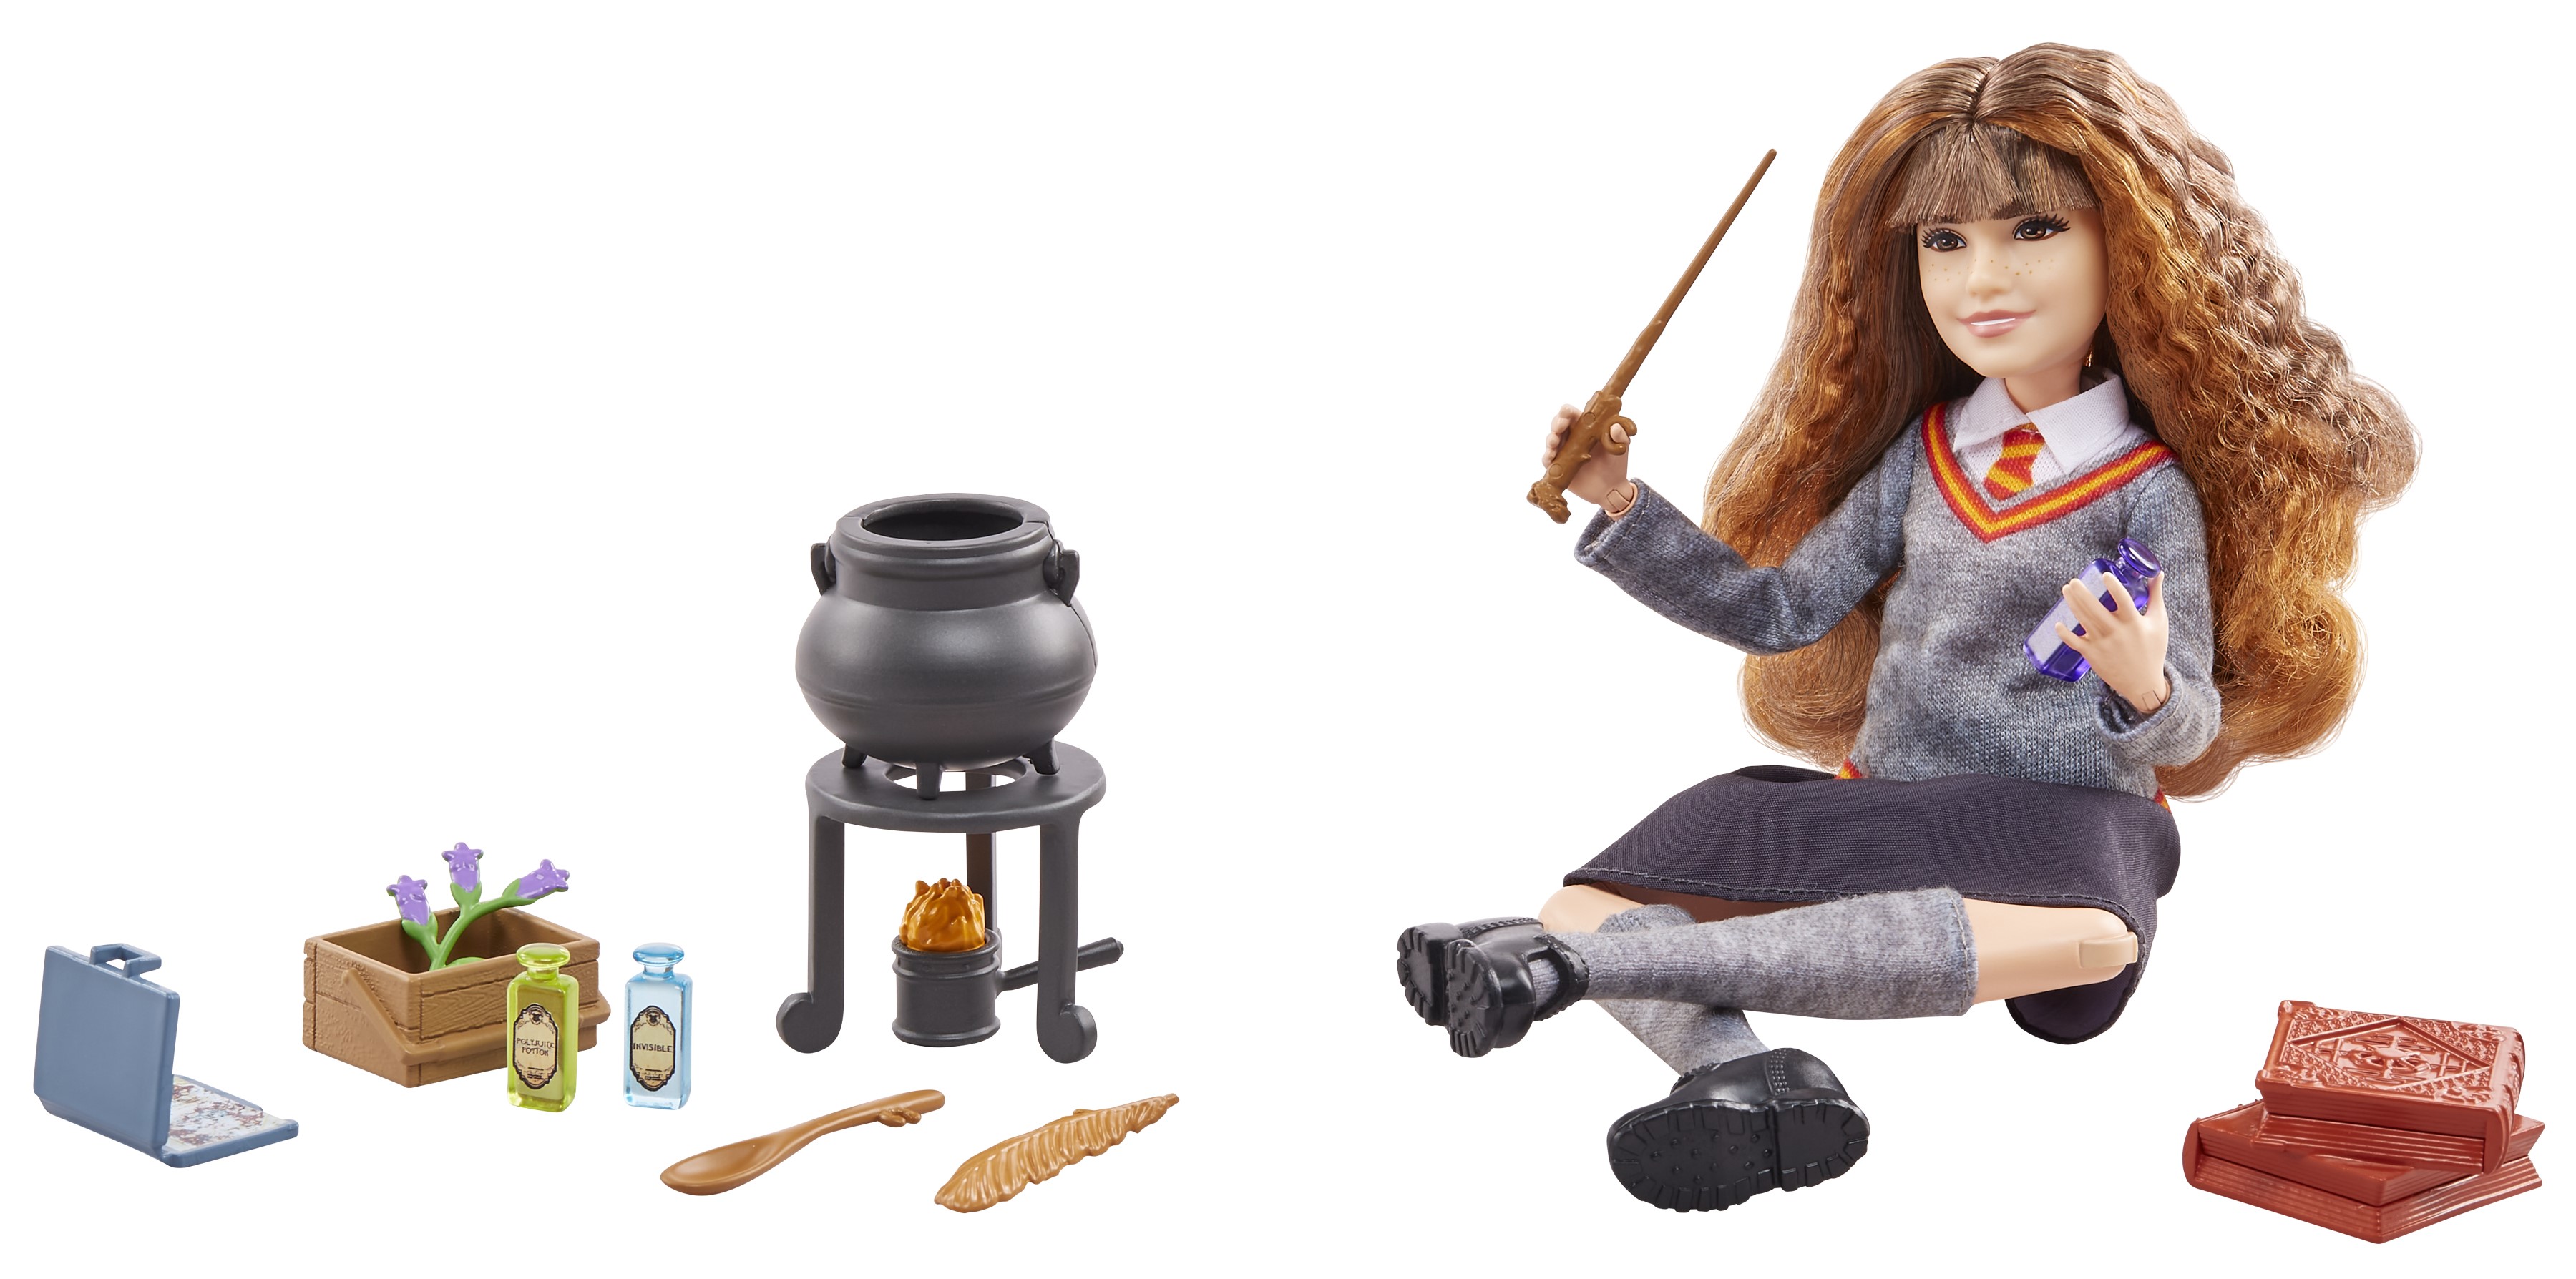 Harry Potter Dolls Doll Hermione Granger, Ron Hogwarts Figures, Harry Potter